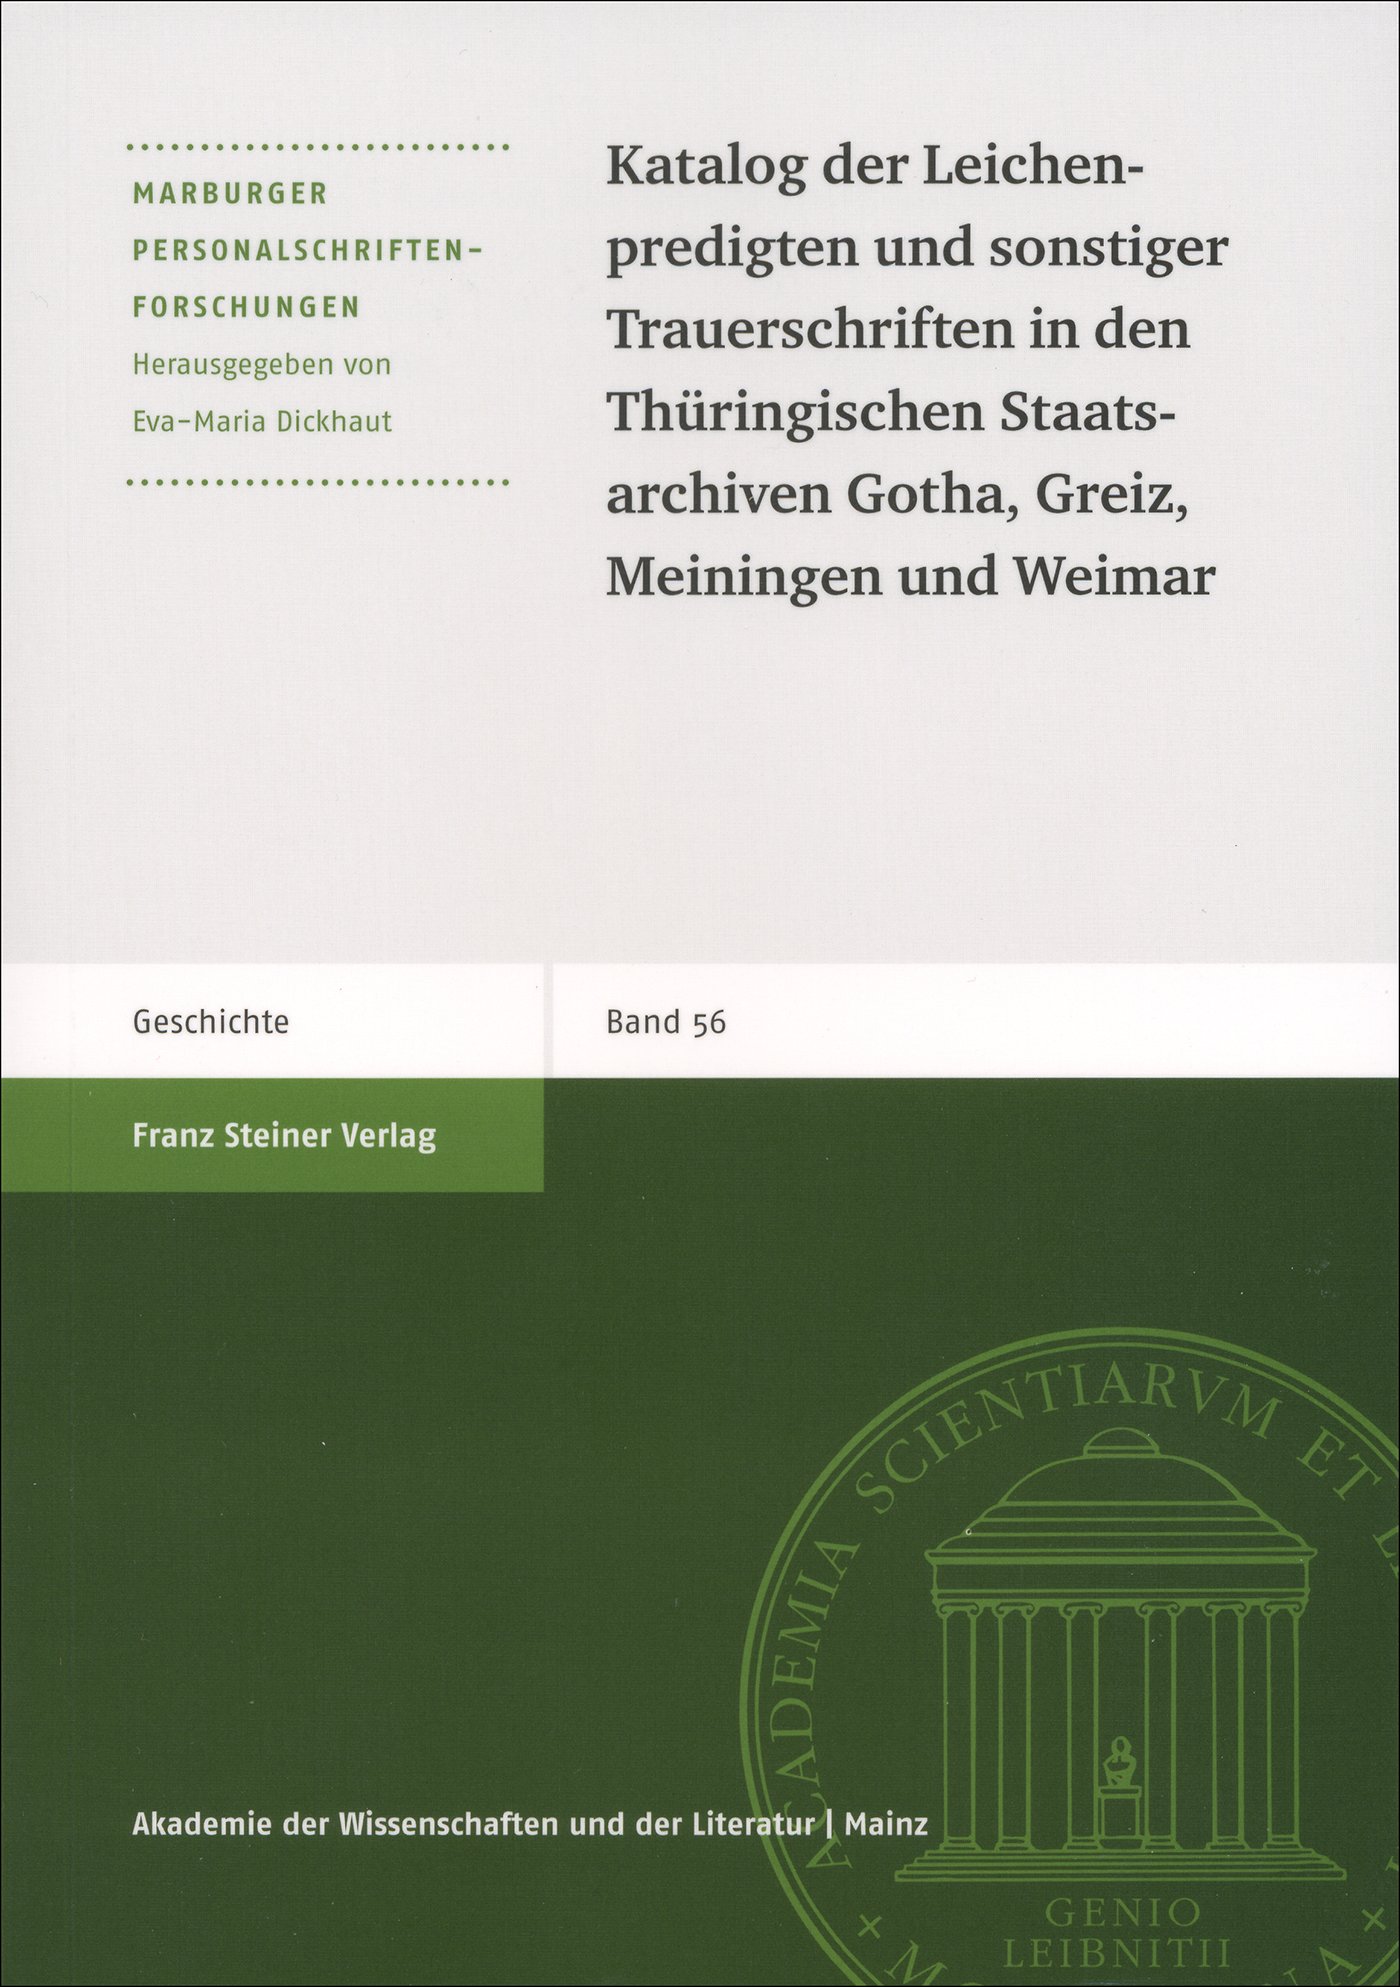 Katalog der Leichenpredigten und sonstiger Trauerschriften in den 
Thüringischen Staatsarchiven Gotha, Greiz, Meiningen und Weimar